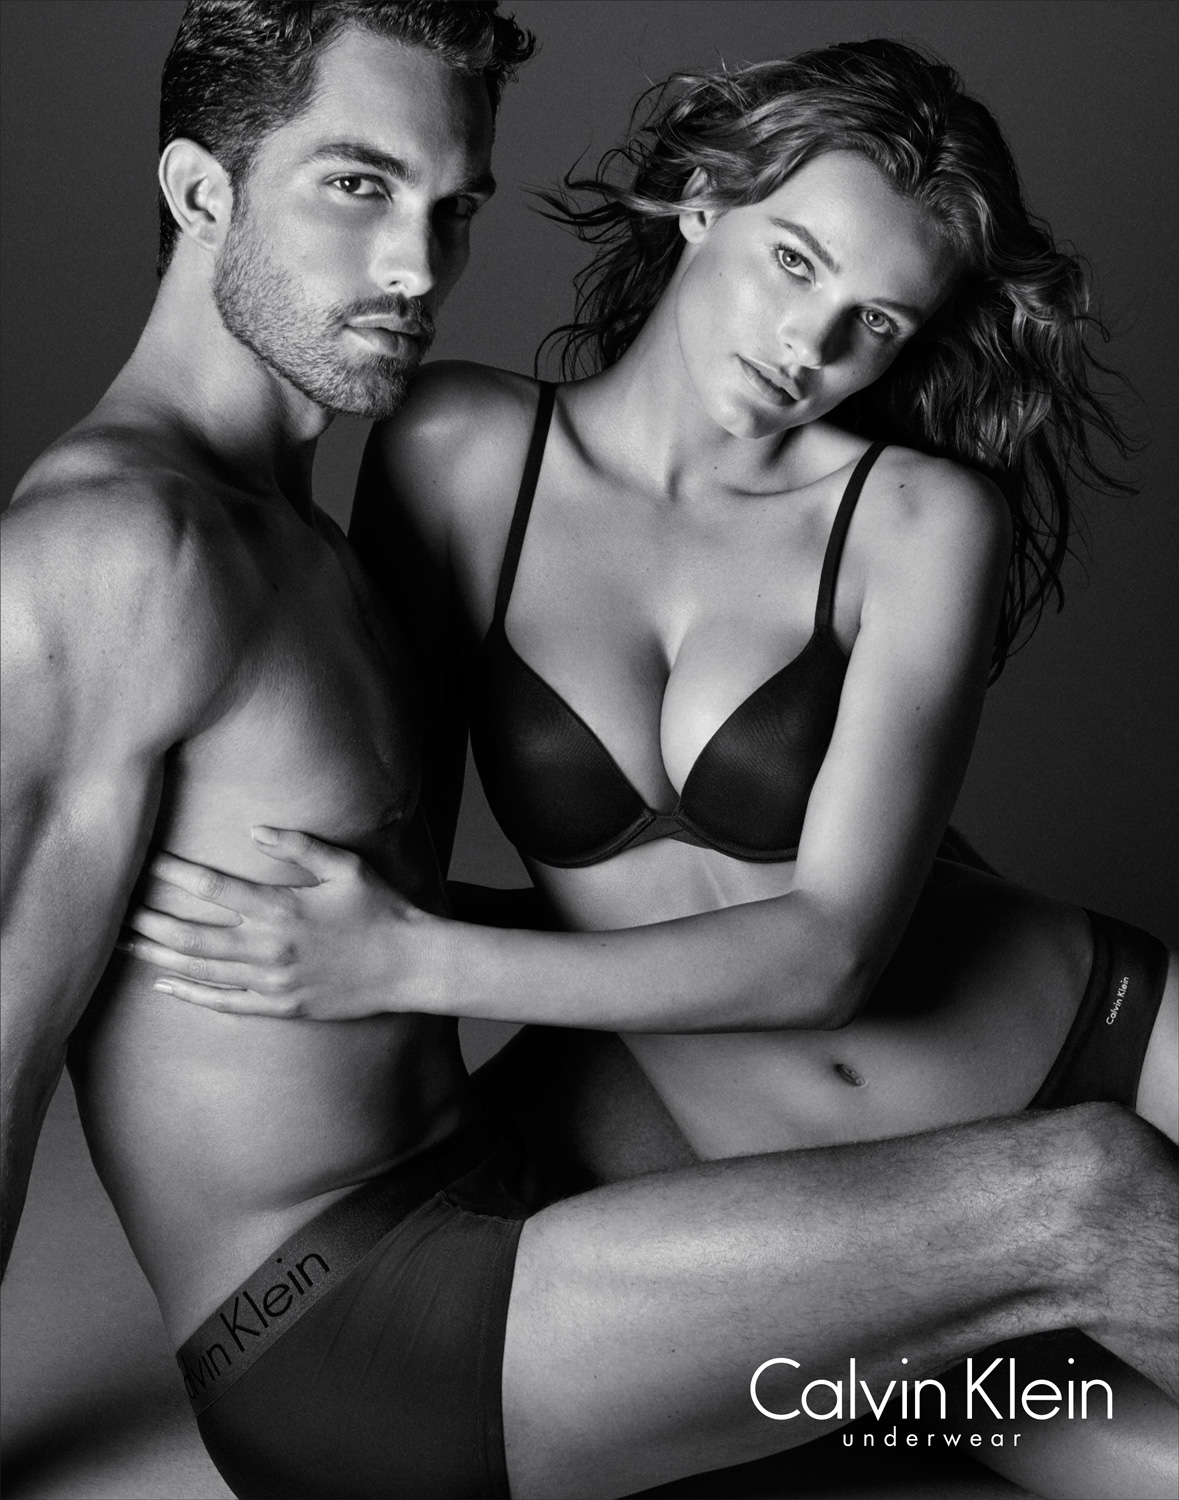 Calvin Klein Underwear Tobias Sorensen Poses For New Images The Fashionisto